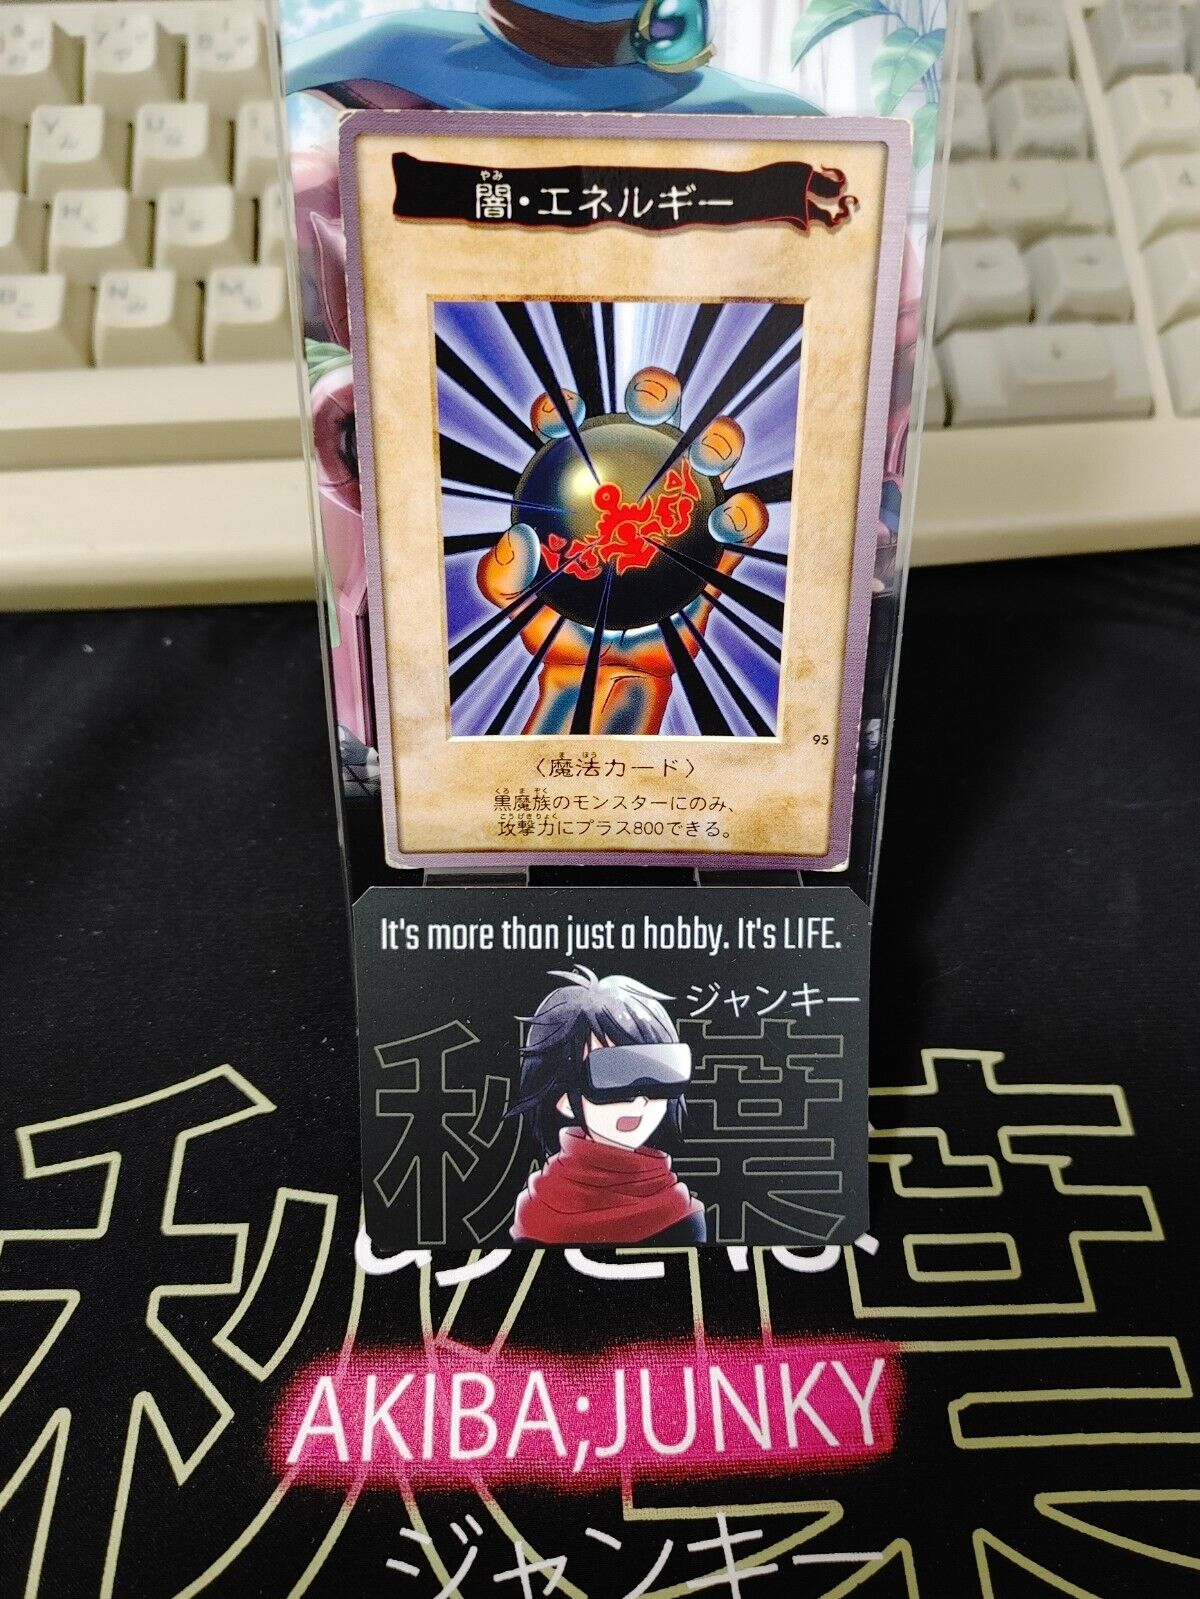 Yu-Gi-Oh Dark Energy Bandai Carddass Card #95  Japanese Retro Japan Rare